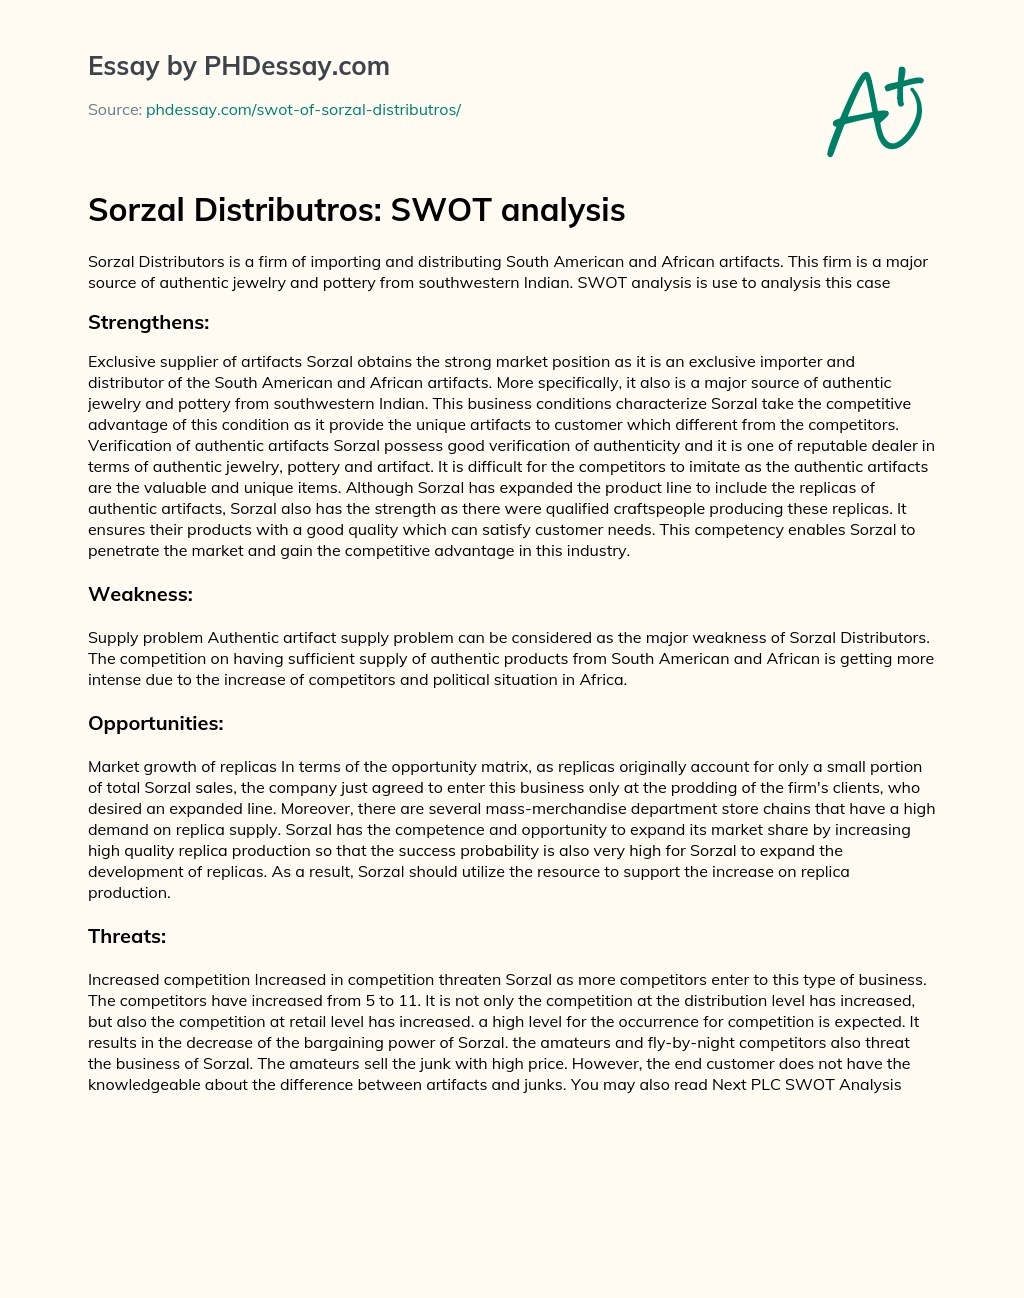 Sorzal Distributros: SWOT analysis essay